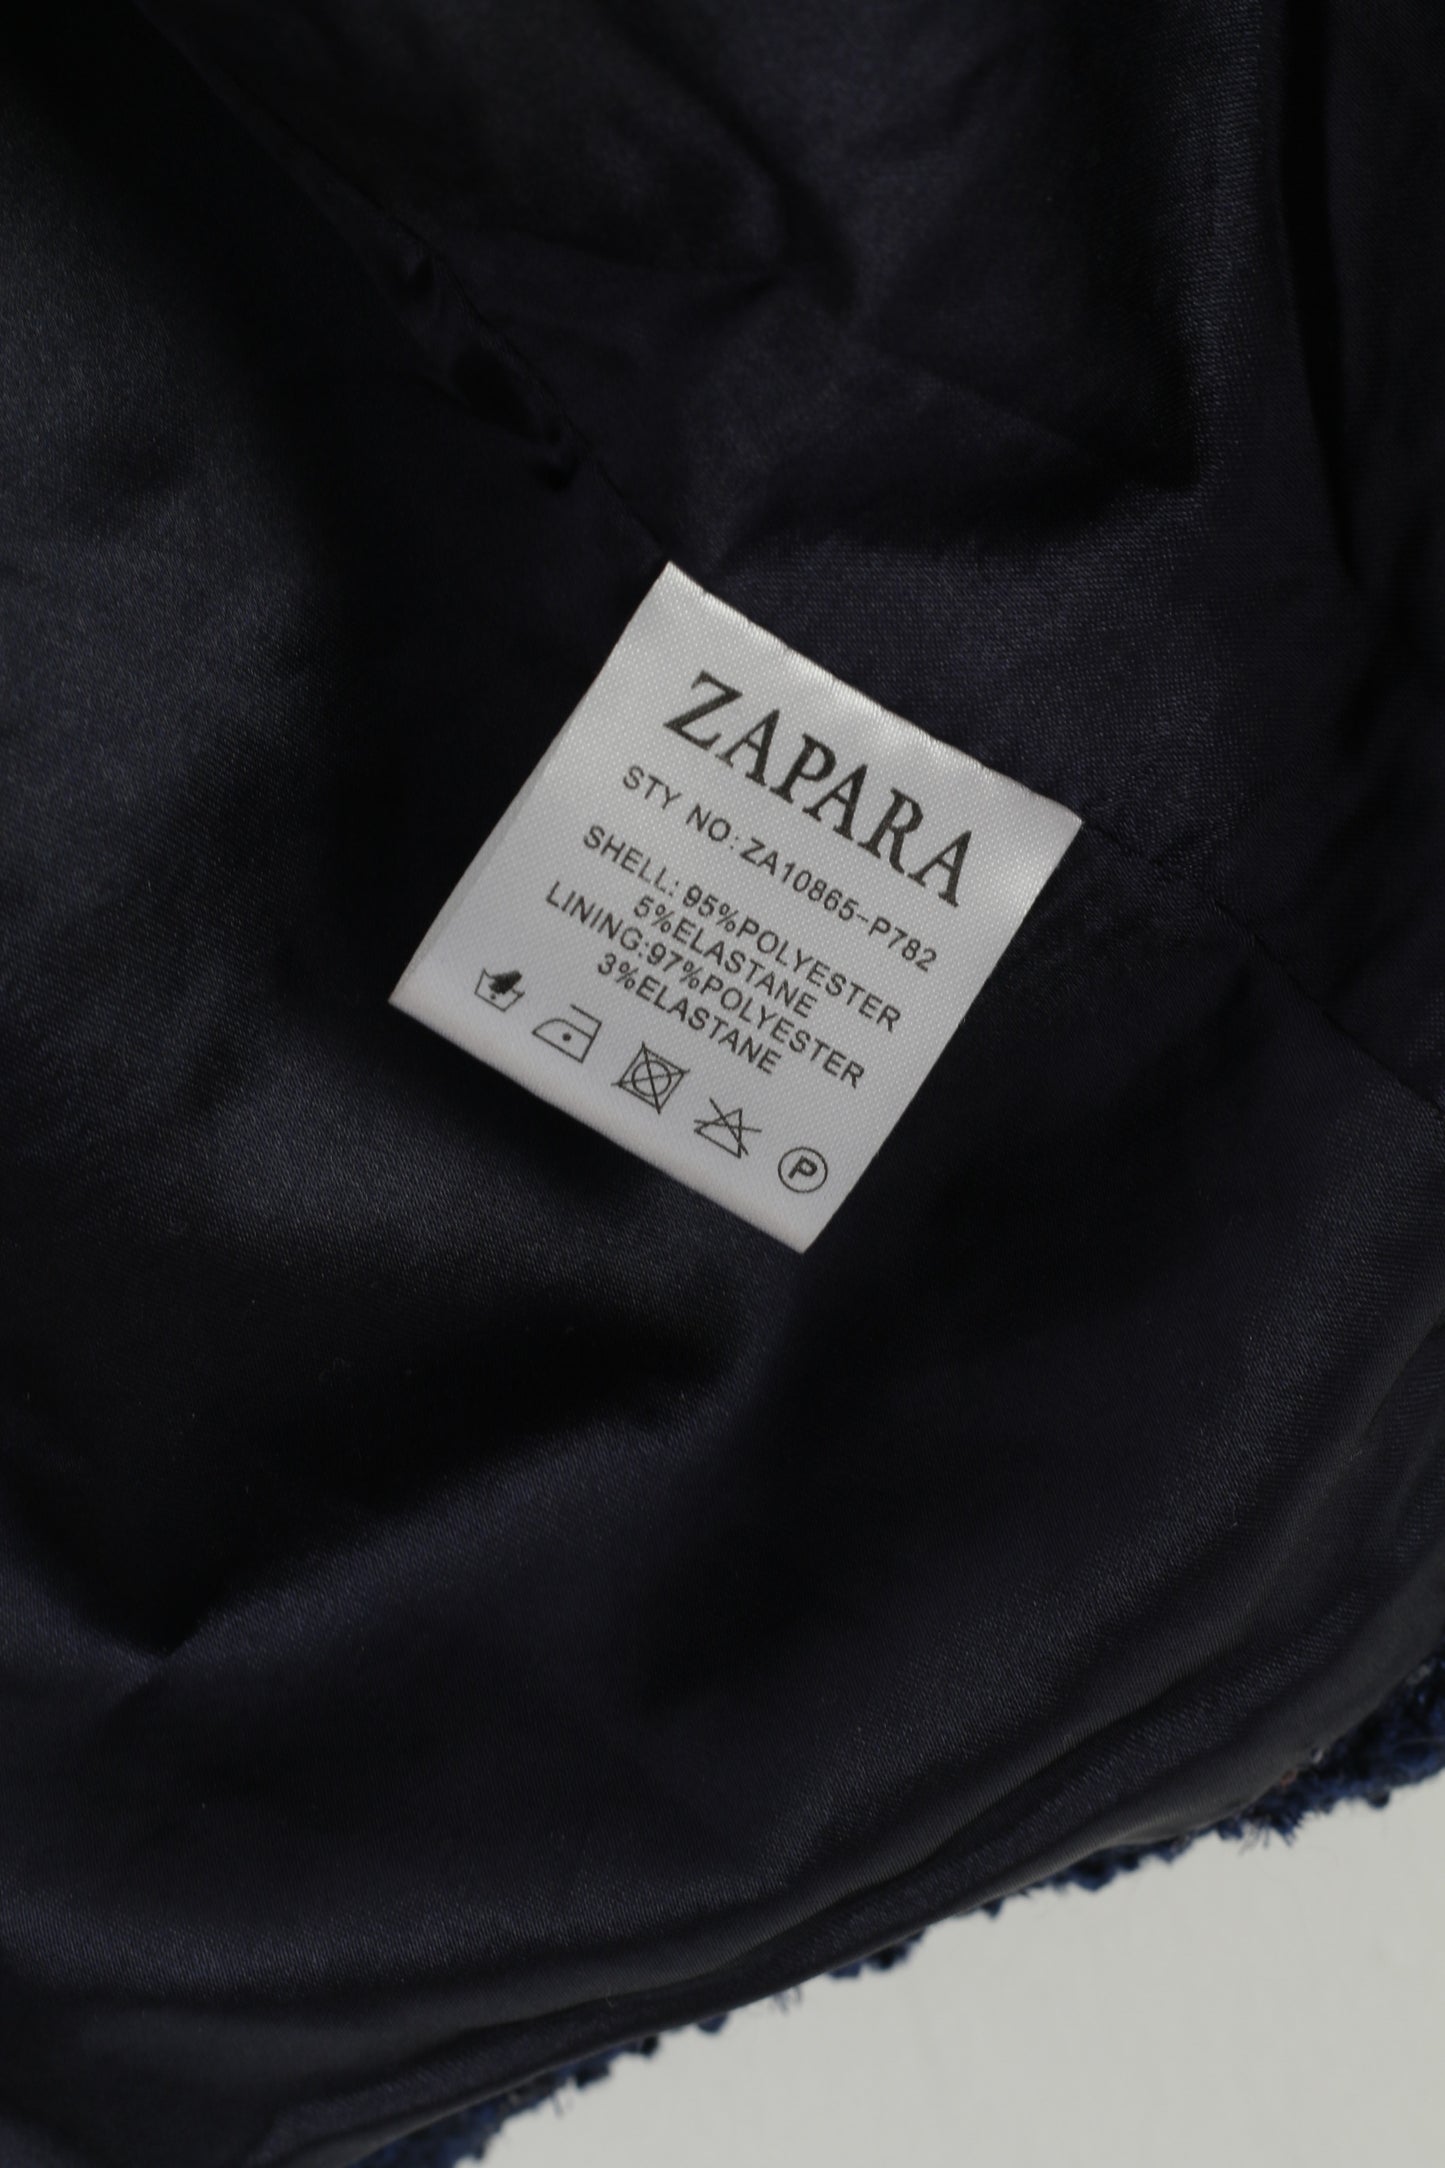 Zapara Women 16 L Blazer Blue Vintage Shiny Sequins Shoulder Pads Elegant Top